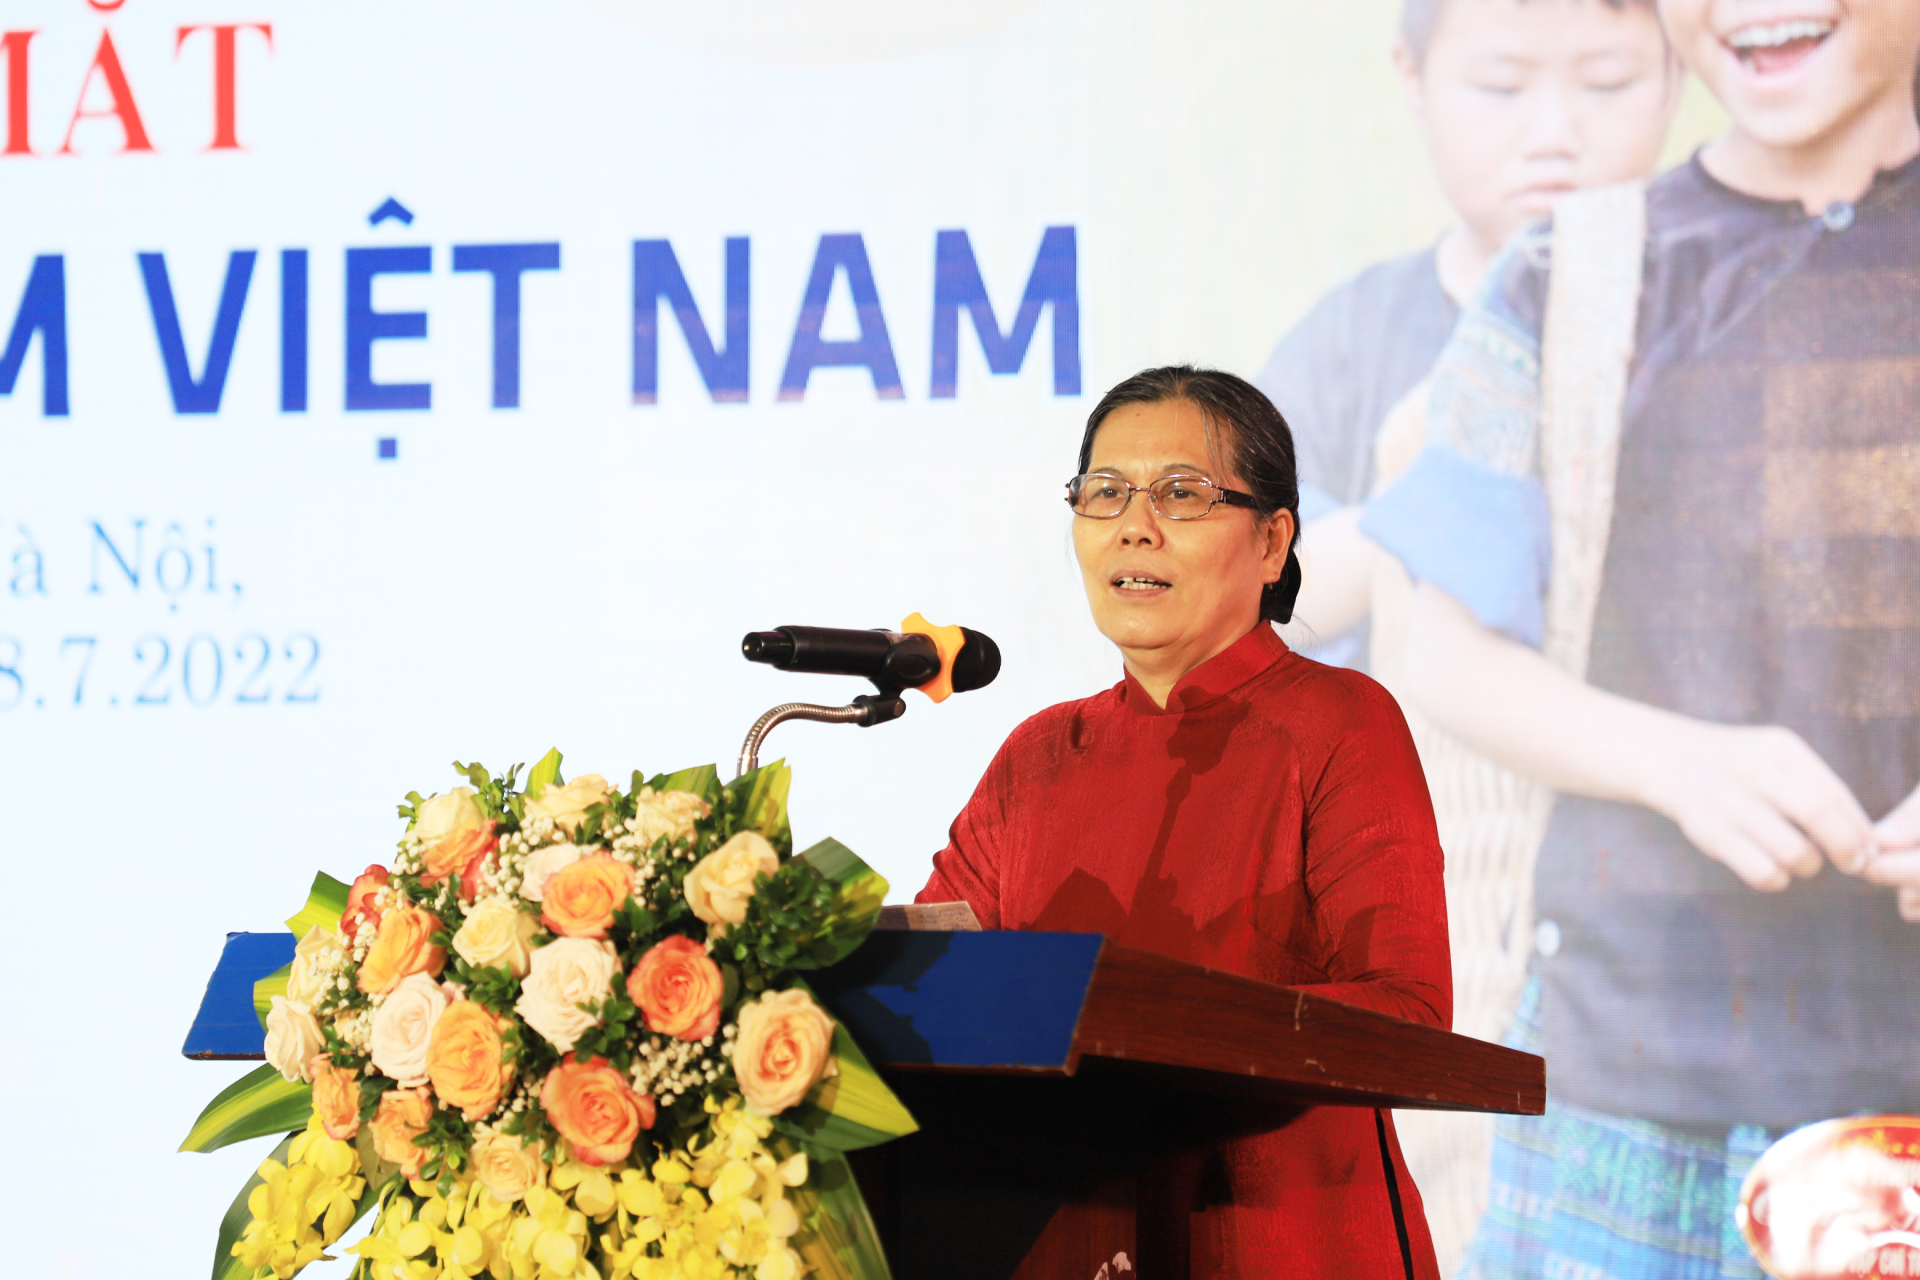 Chủ tịch Hội Bảo vệ quyền trẻ em Việt Nam Nguyễn Thị Thanh Hòa: 'Chung tâm, chung trí, chung sức bảo vệ quyền trẻ em'